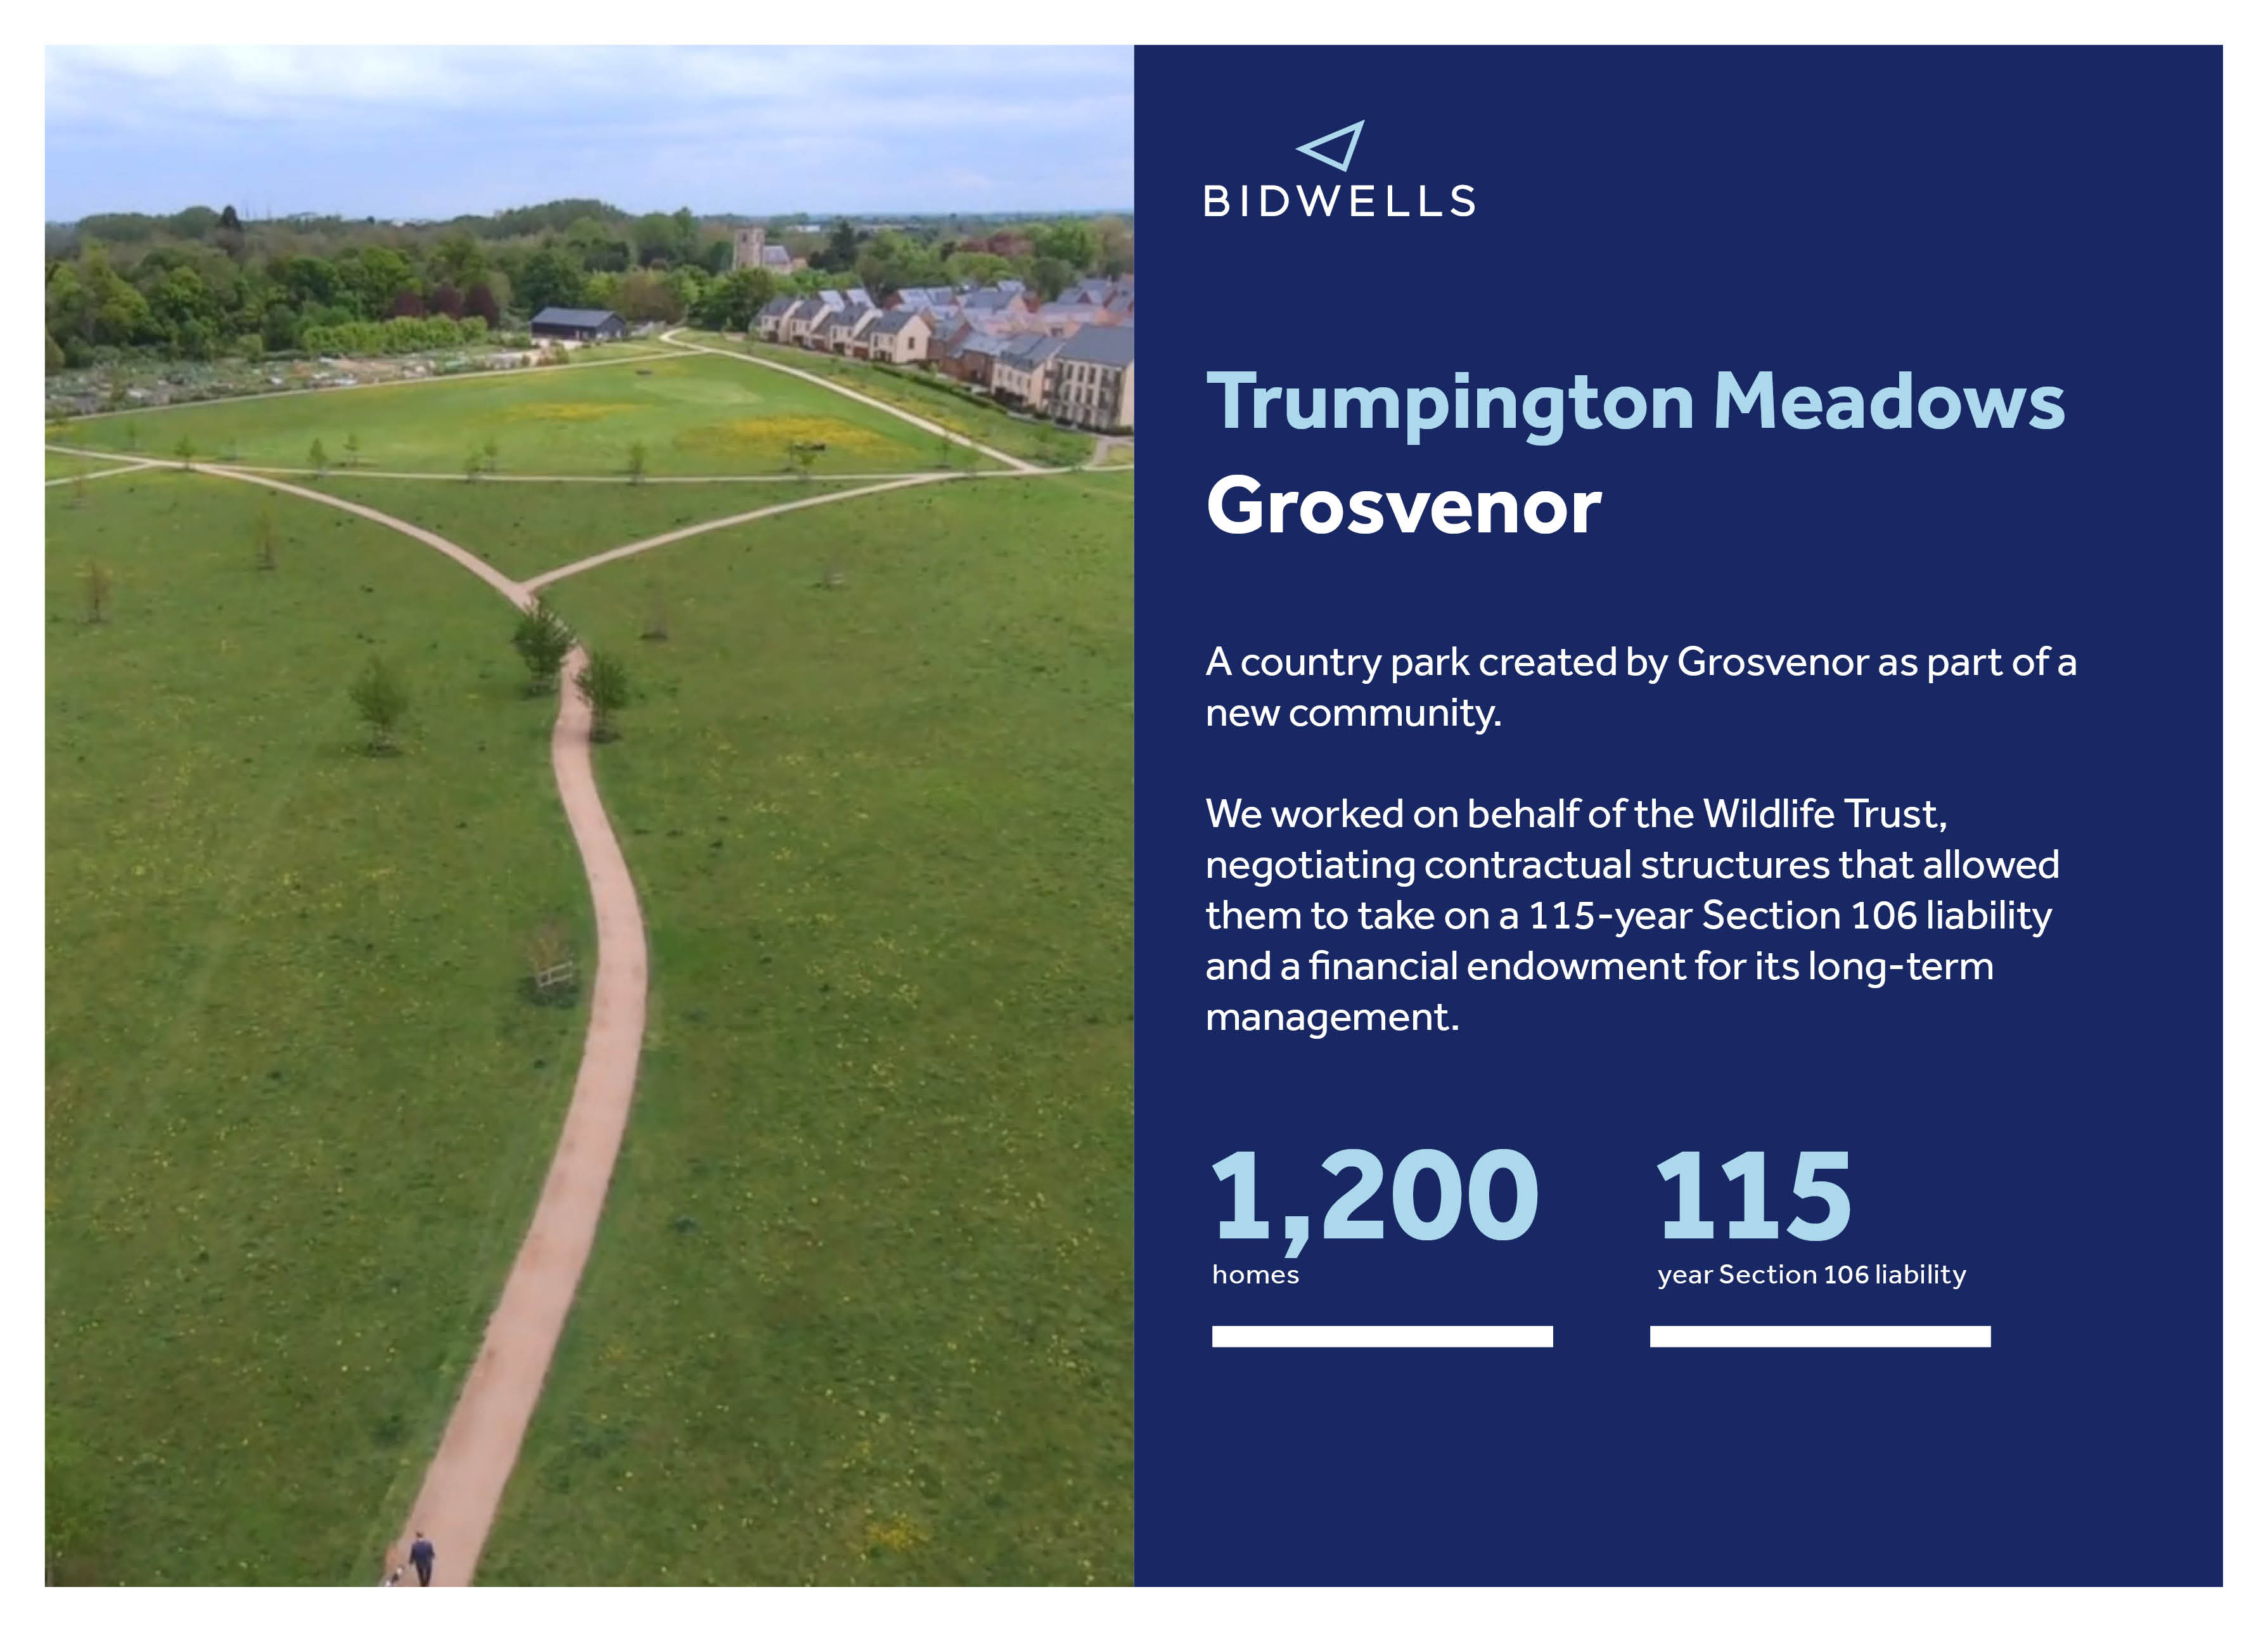 Grosvenor - Trumpington Meadows